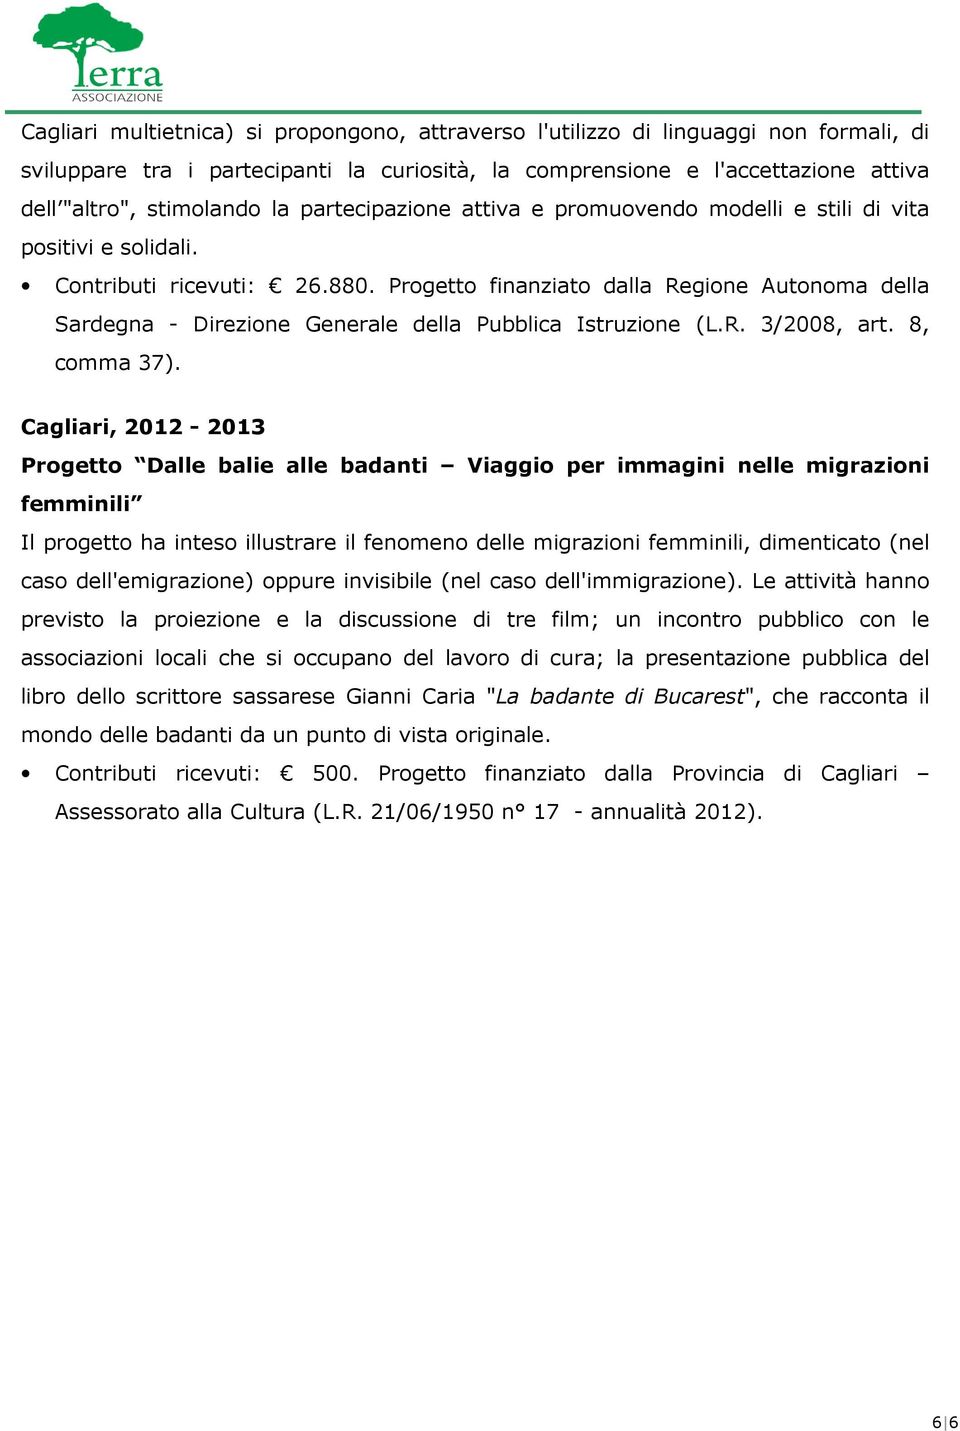 Progetto finanziato dalla Regione Autonoma della Sardegna - Direzione Generale della Pubblica Istruzione (L.R. 3/2008, art. 8, comma 37).